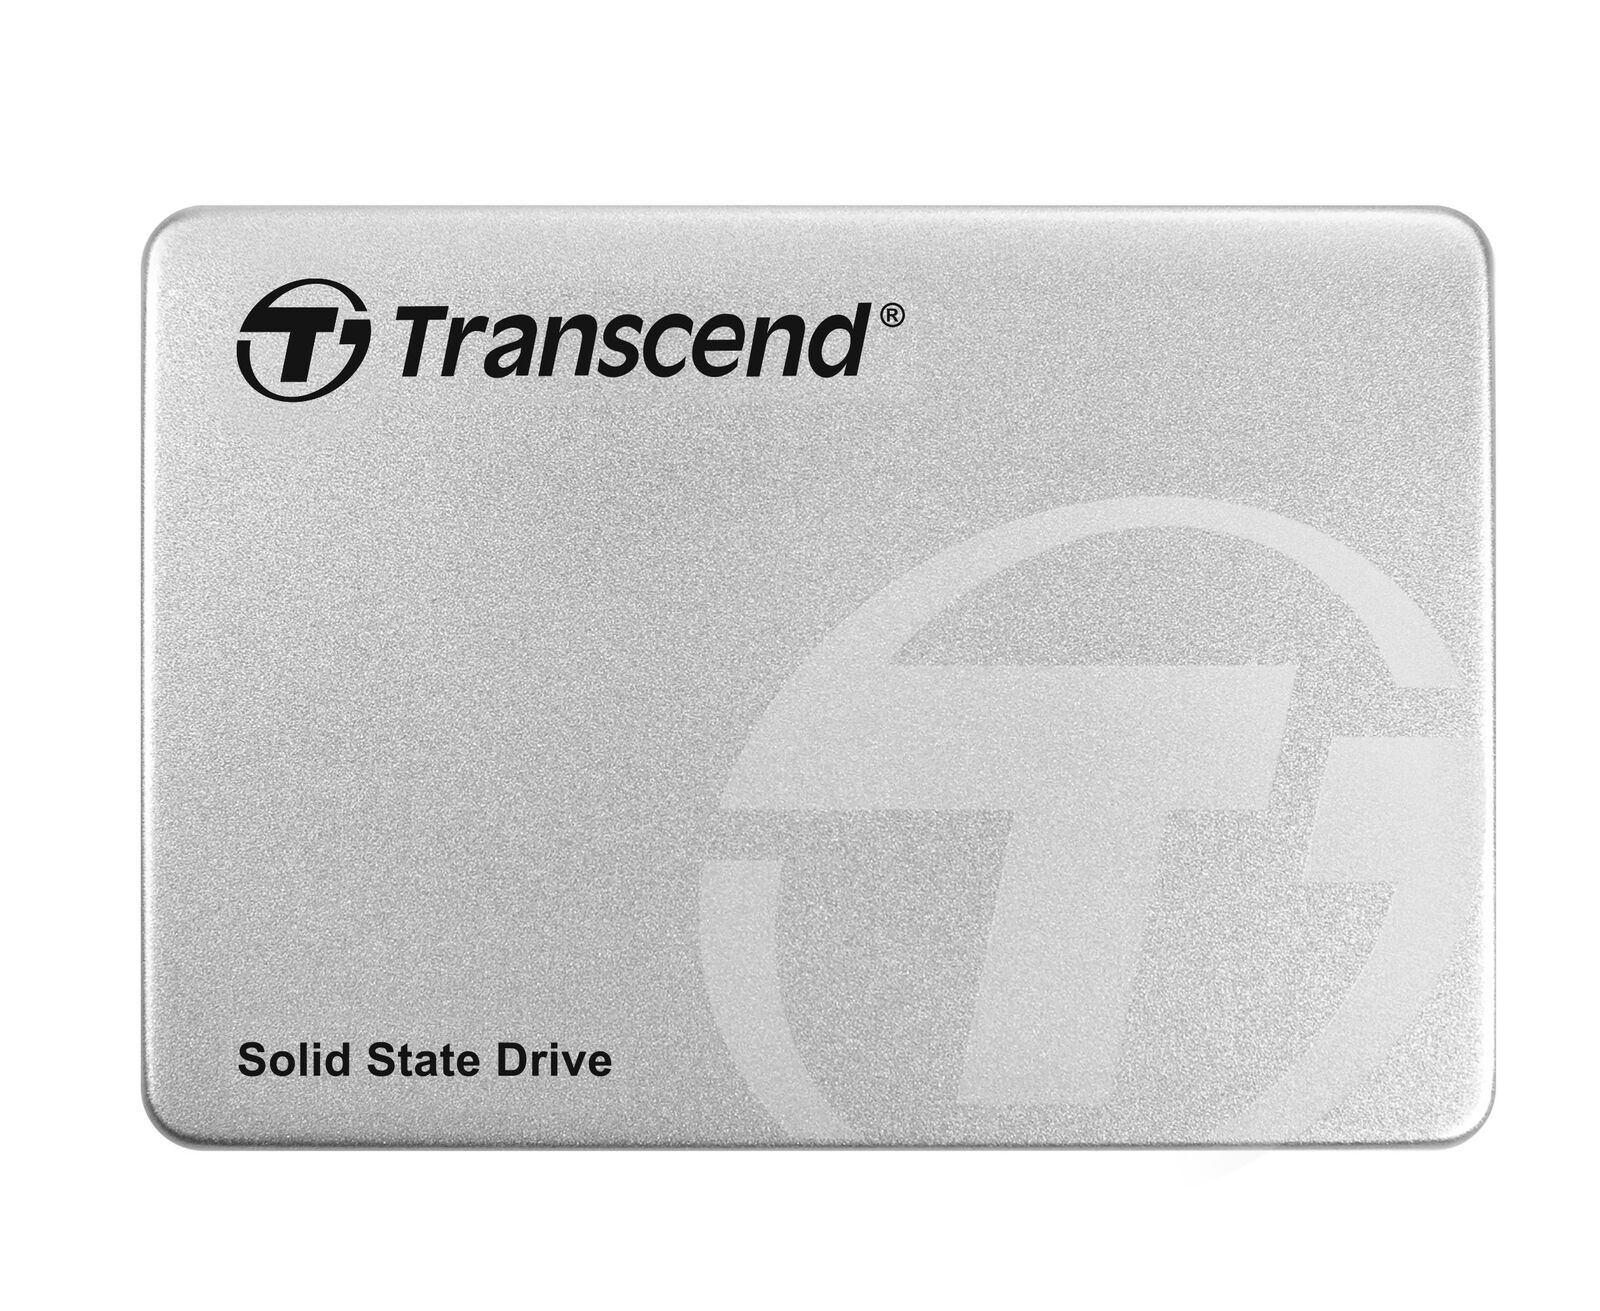 Transcend Highspeed 128GB interne 2.5” SSD (≠HDD) SATA III 6Gb/s, robust und sch